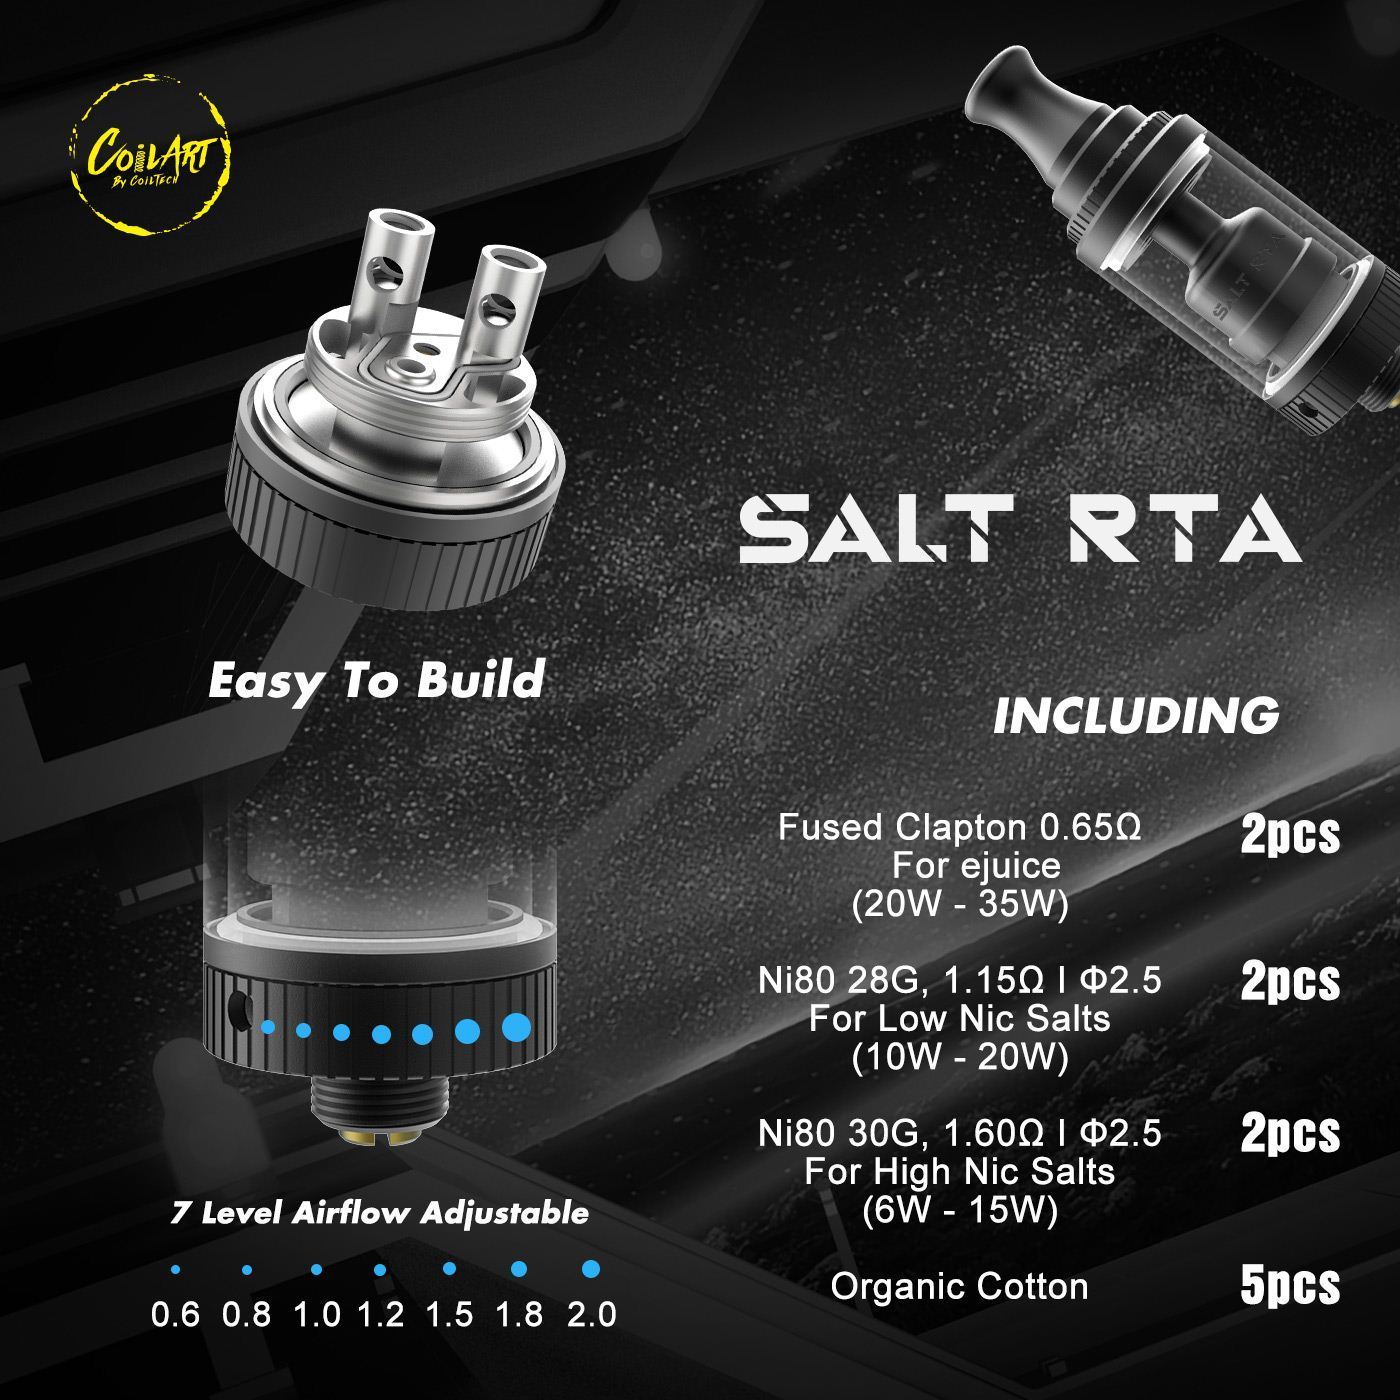 premiers pas reconstructible Coilart-salt-rta-01